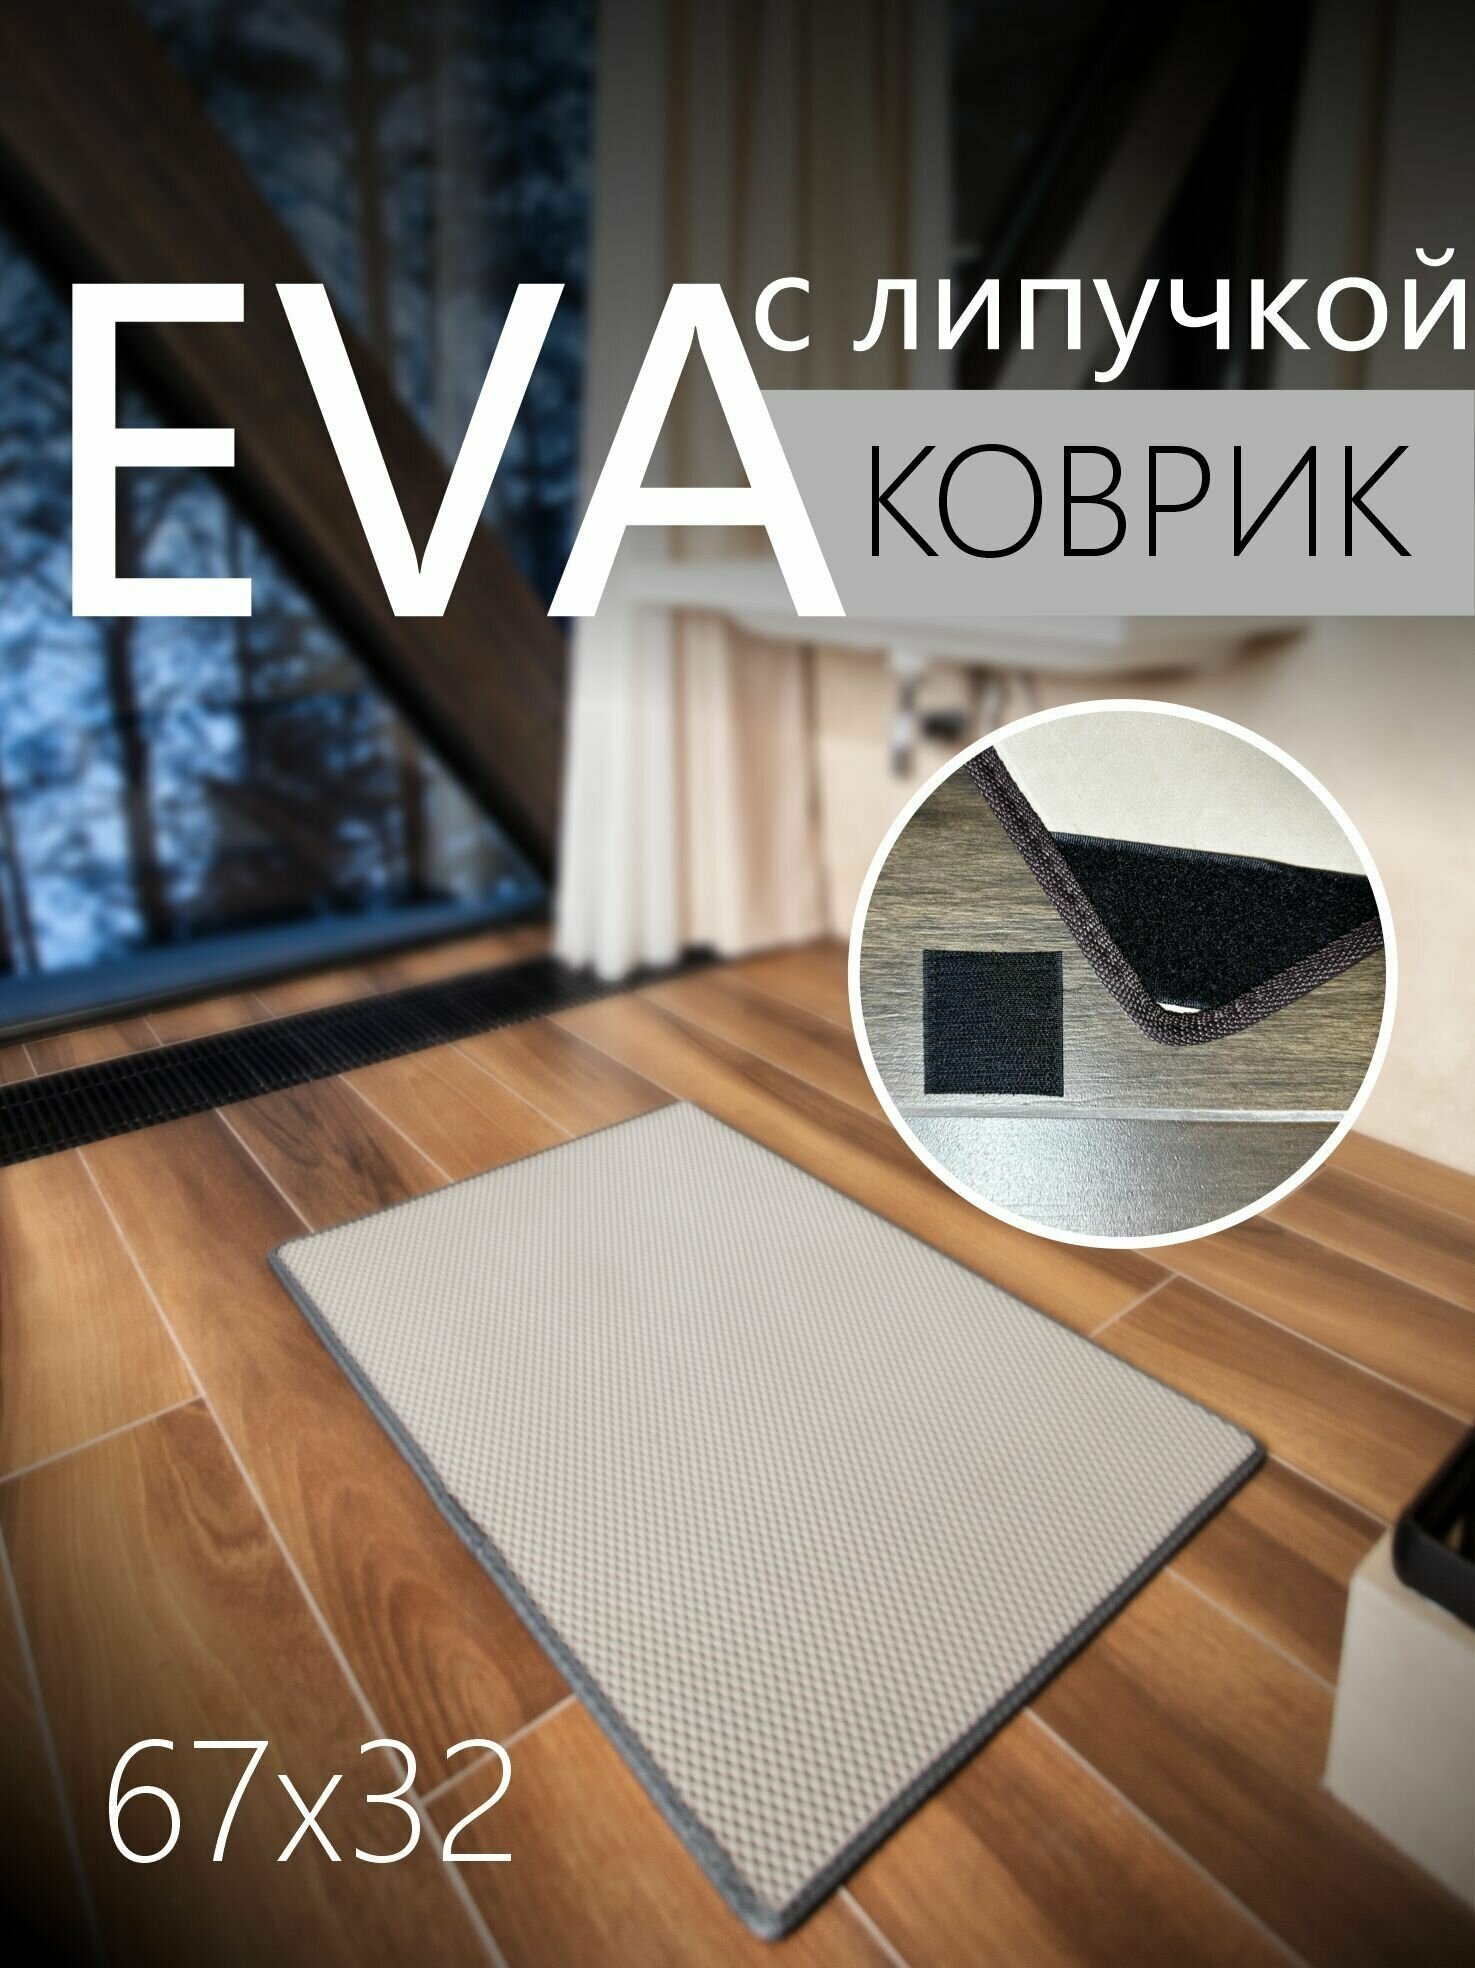 Коврик придверный противоскользящий EVA ЭВА универсальный 67х32 сантиметра. Липучки для фиксации. Соты Серый с серой окантовкой